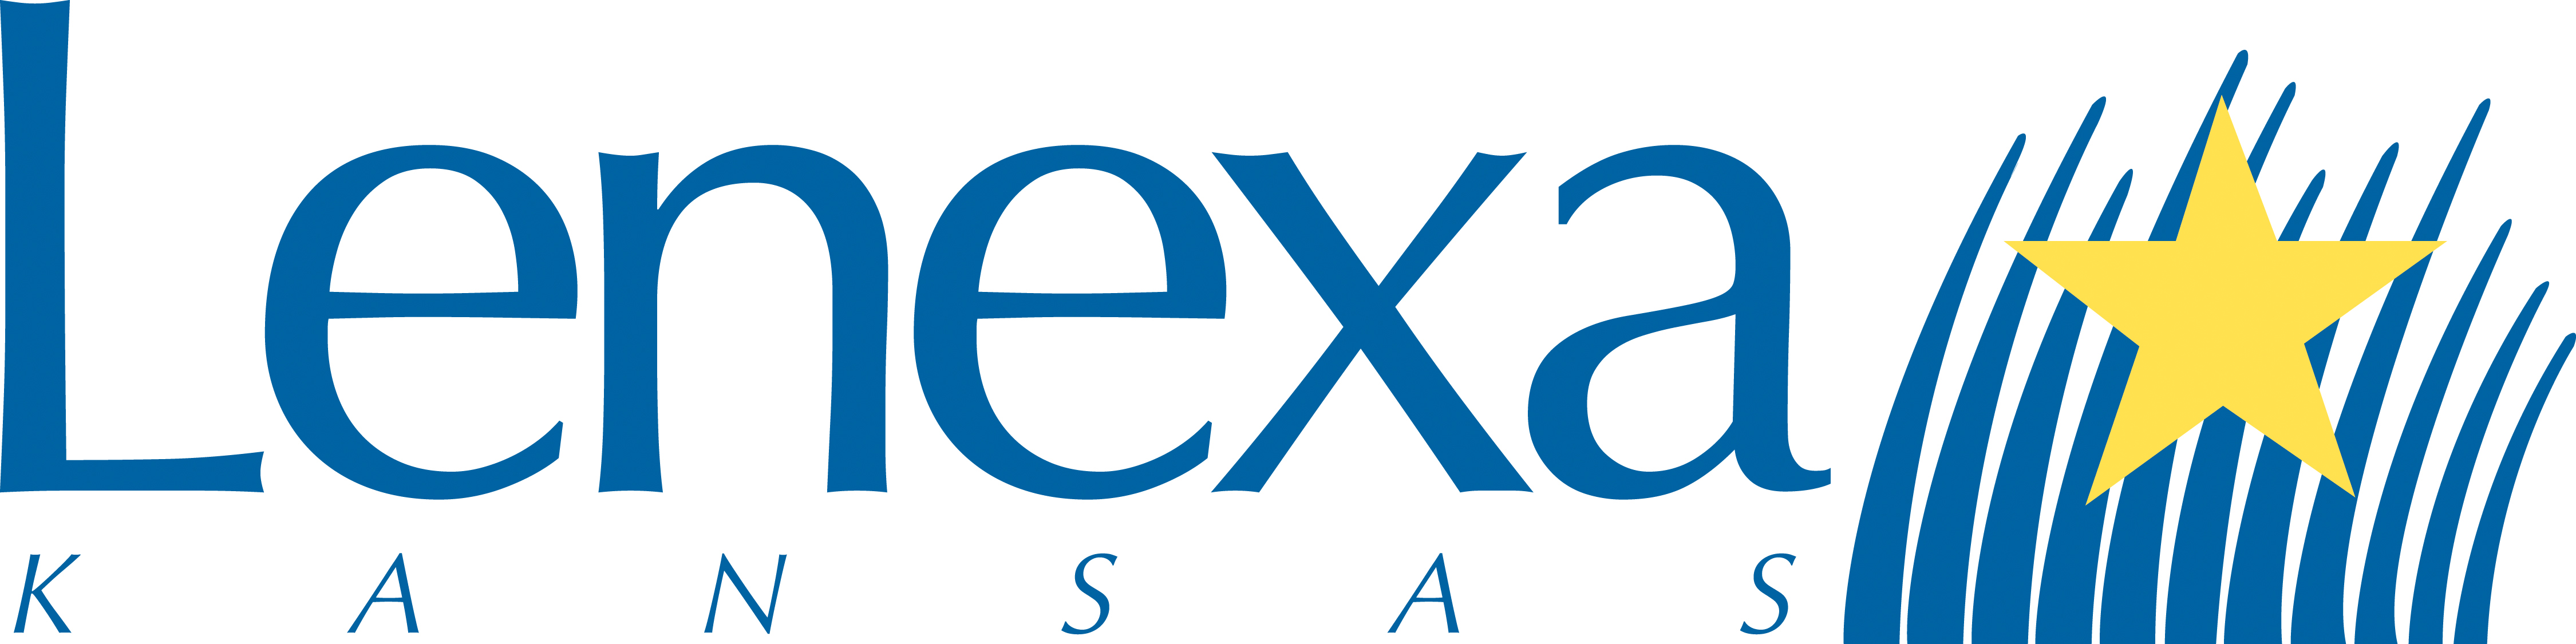 Lenexa-Kansas-logo